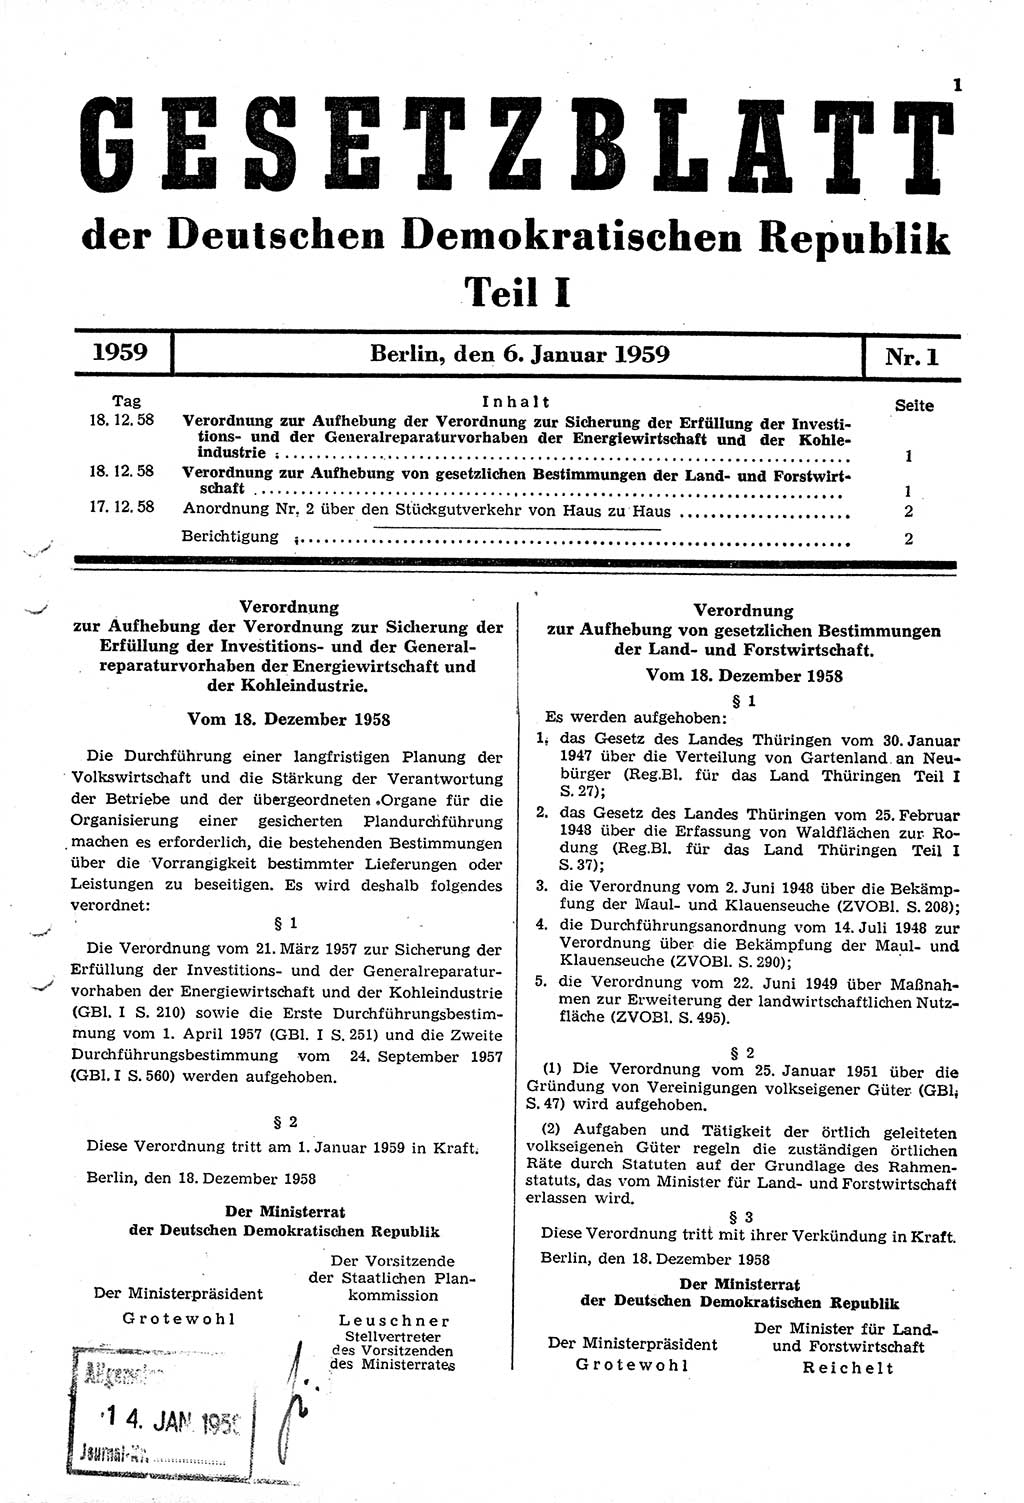 Gesetzblatt (GBl.) der Deutschen Demokratischen Republik (DDR) Teil Ⅰ 1959, Seite 1 (GBl. DDR Ⅰ 1959, S. 1)